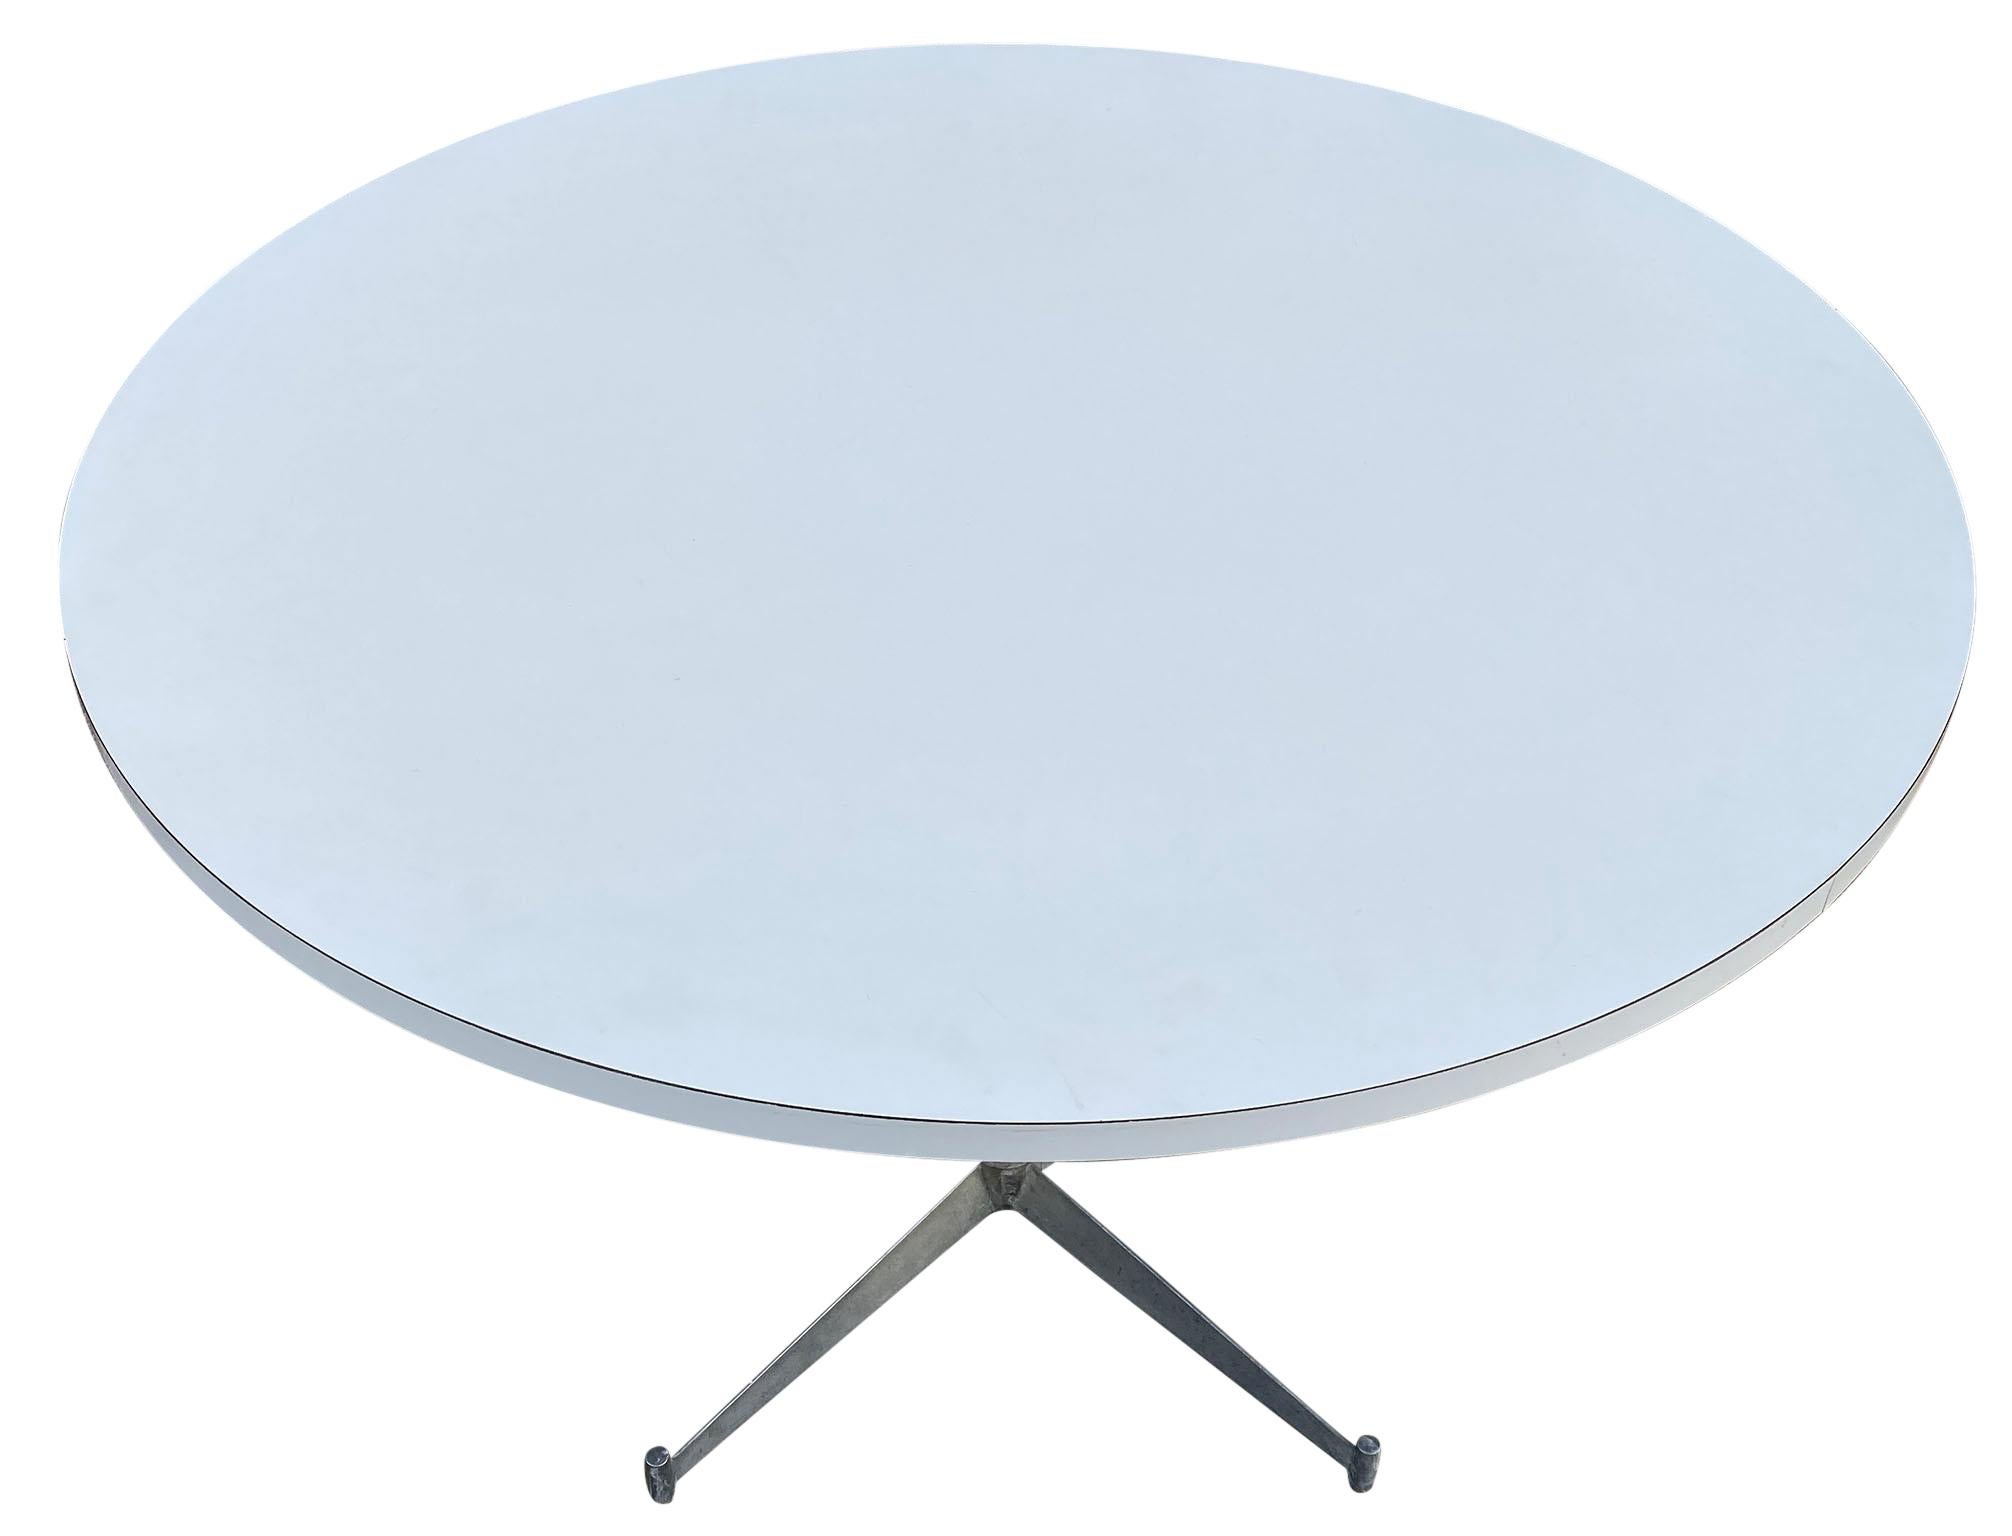 Table de salle à manger ronde en stratifié blanc du milieu du siècle, avec base en aluminium, conçue par Paul McCobb. La table est en excellent état d'origine. Un design remarquable, une table rare.

Mesures : 42